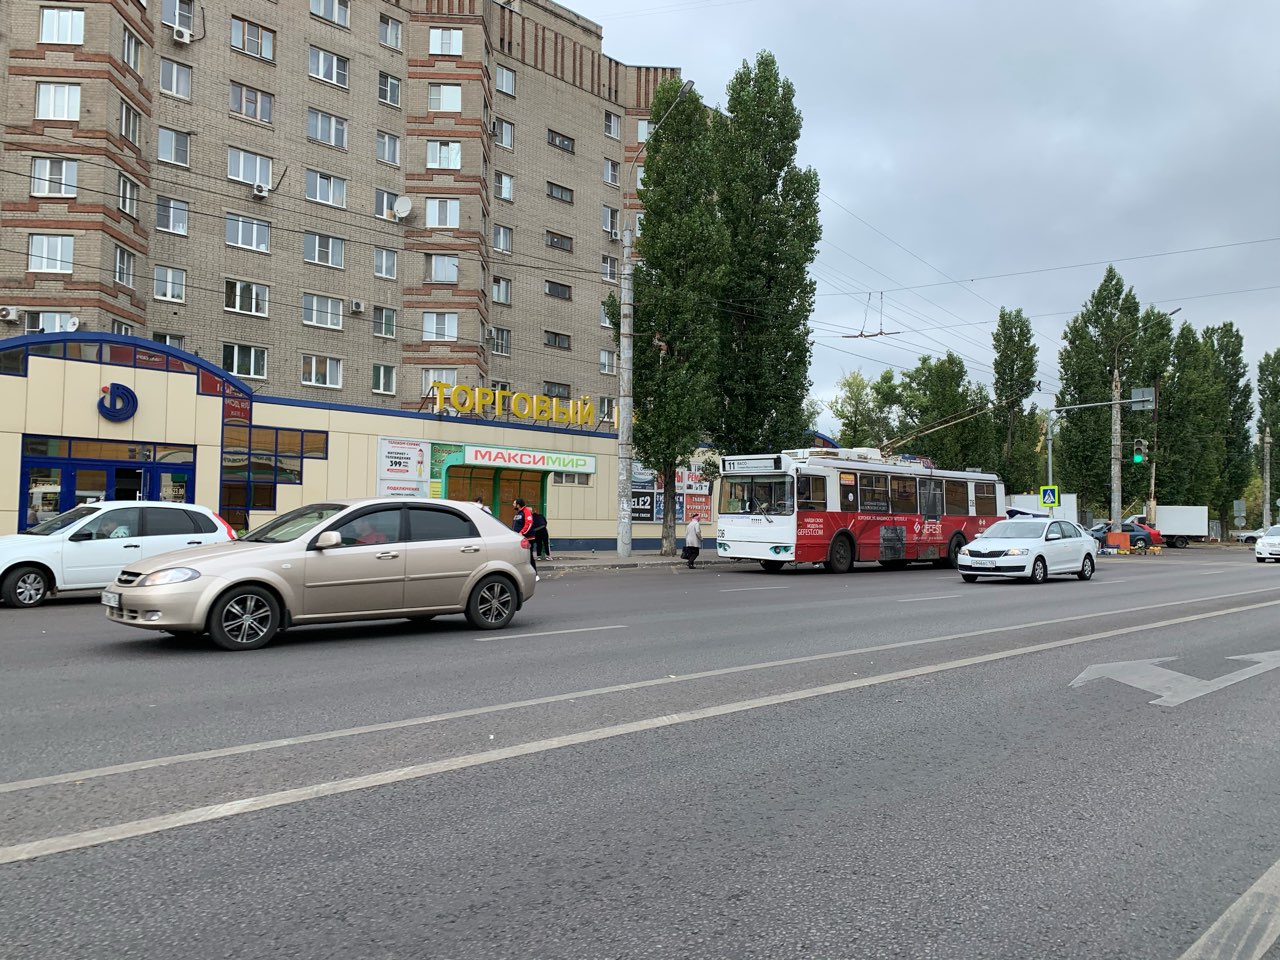 Дополнительный троллейбус № 5 запущен в Нижнем Новгороде - фото 1